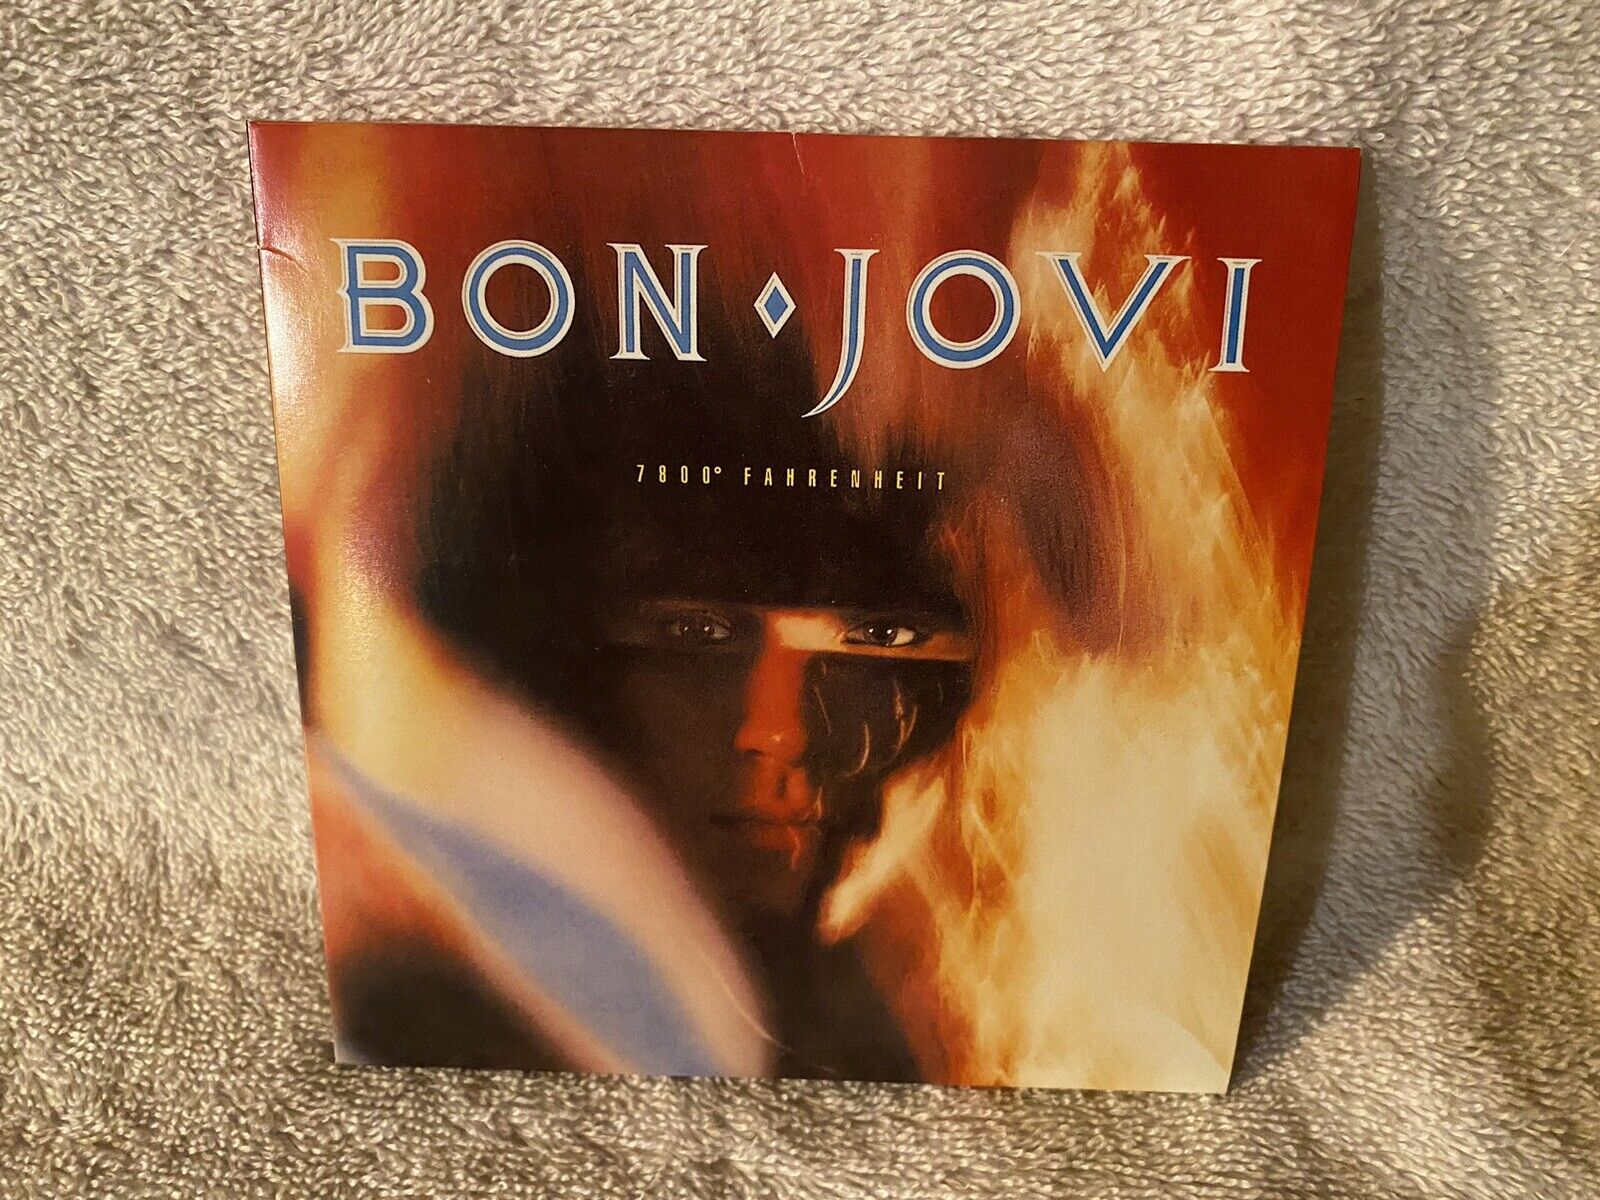 Bon Jovi: 7800 Fahrenheit-mini replica lp sleeve Cd w/inserts